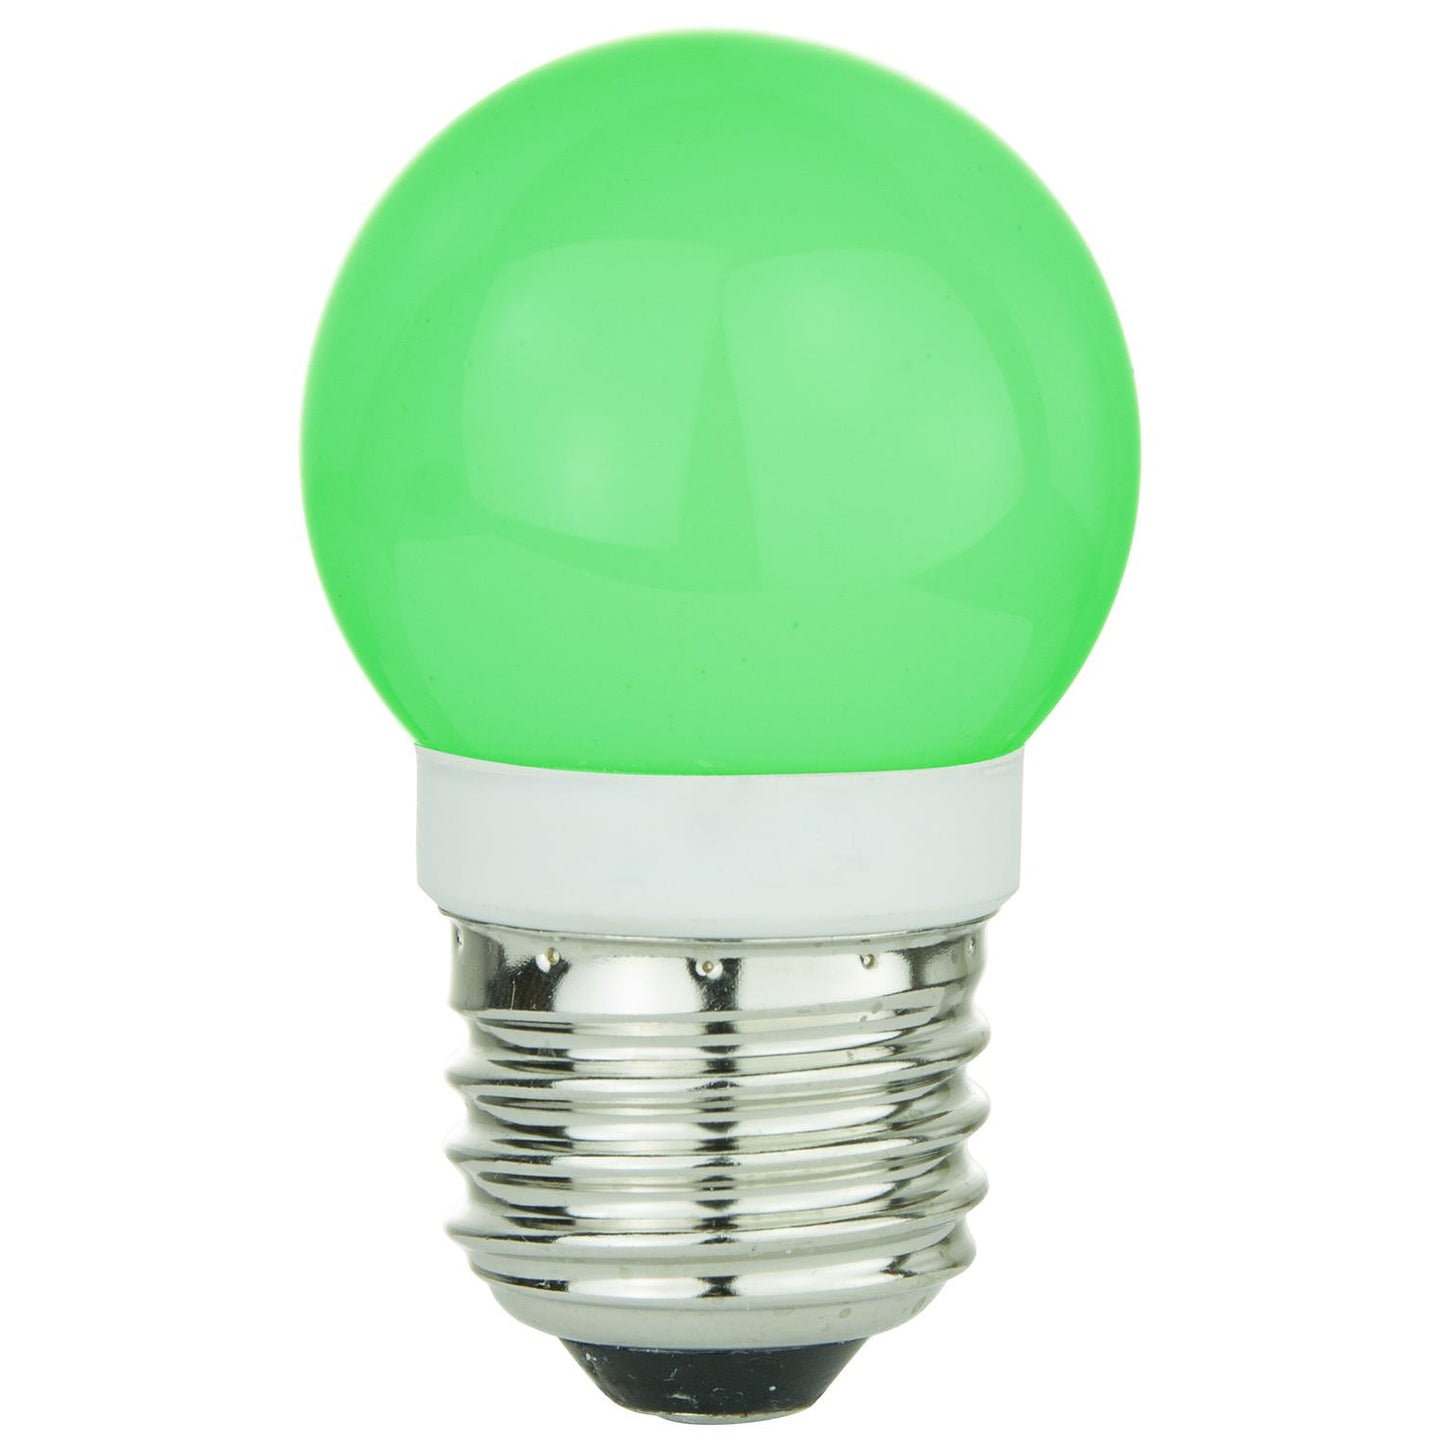 Sunlite G13 Globe, Medium Base Light Bulb, Green